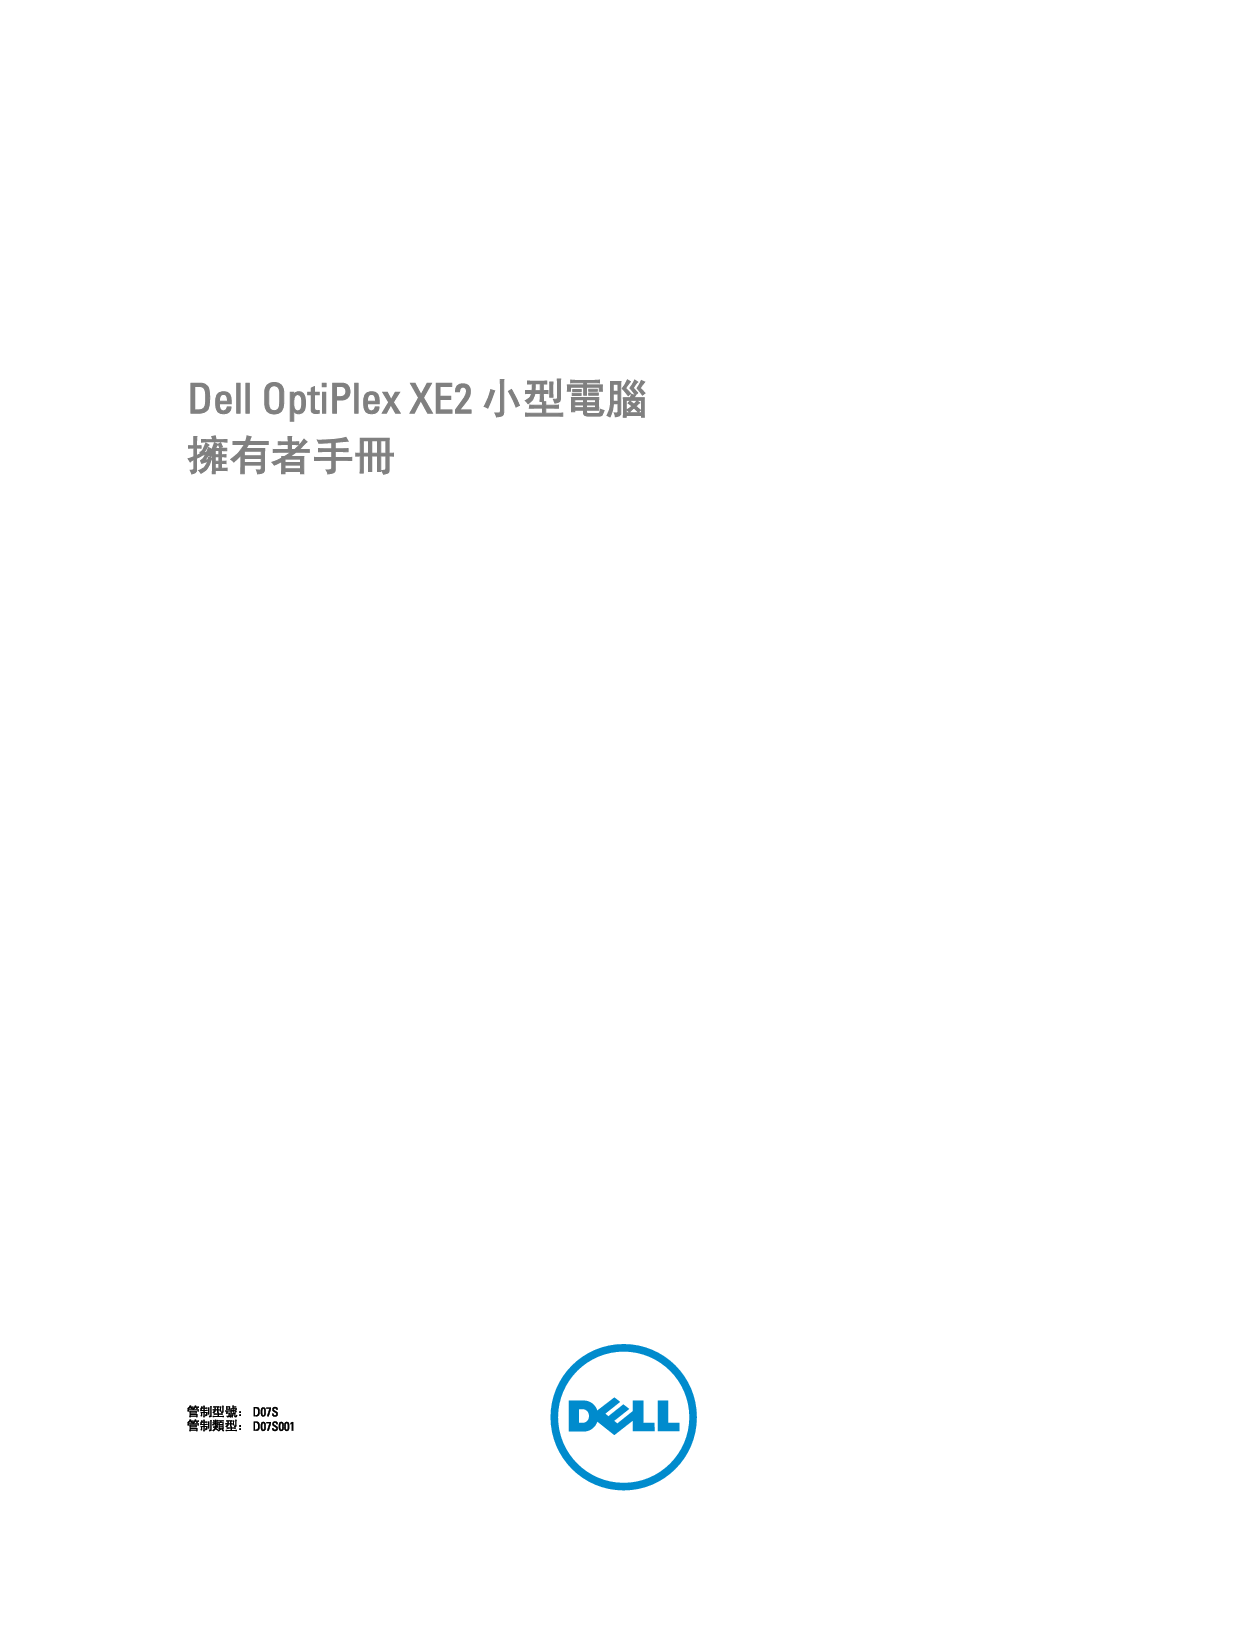 戴尔 Dell Optiplex XE2 小型 繁体 用户手册 封面